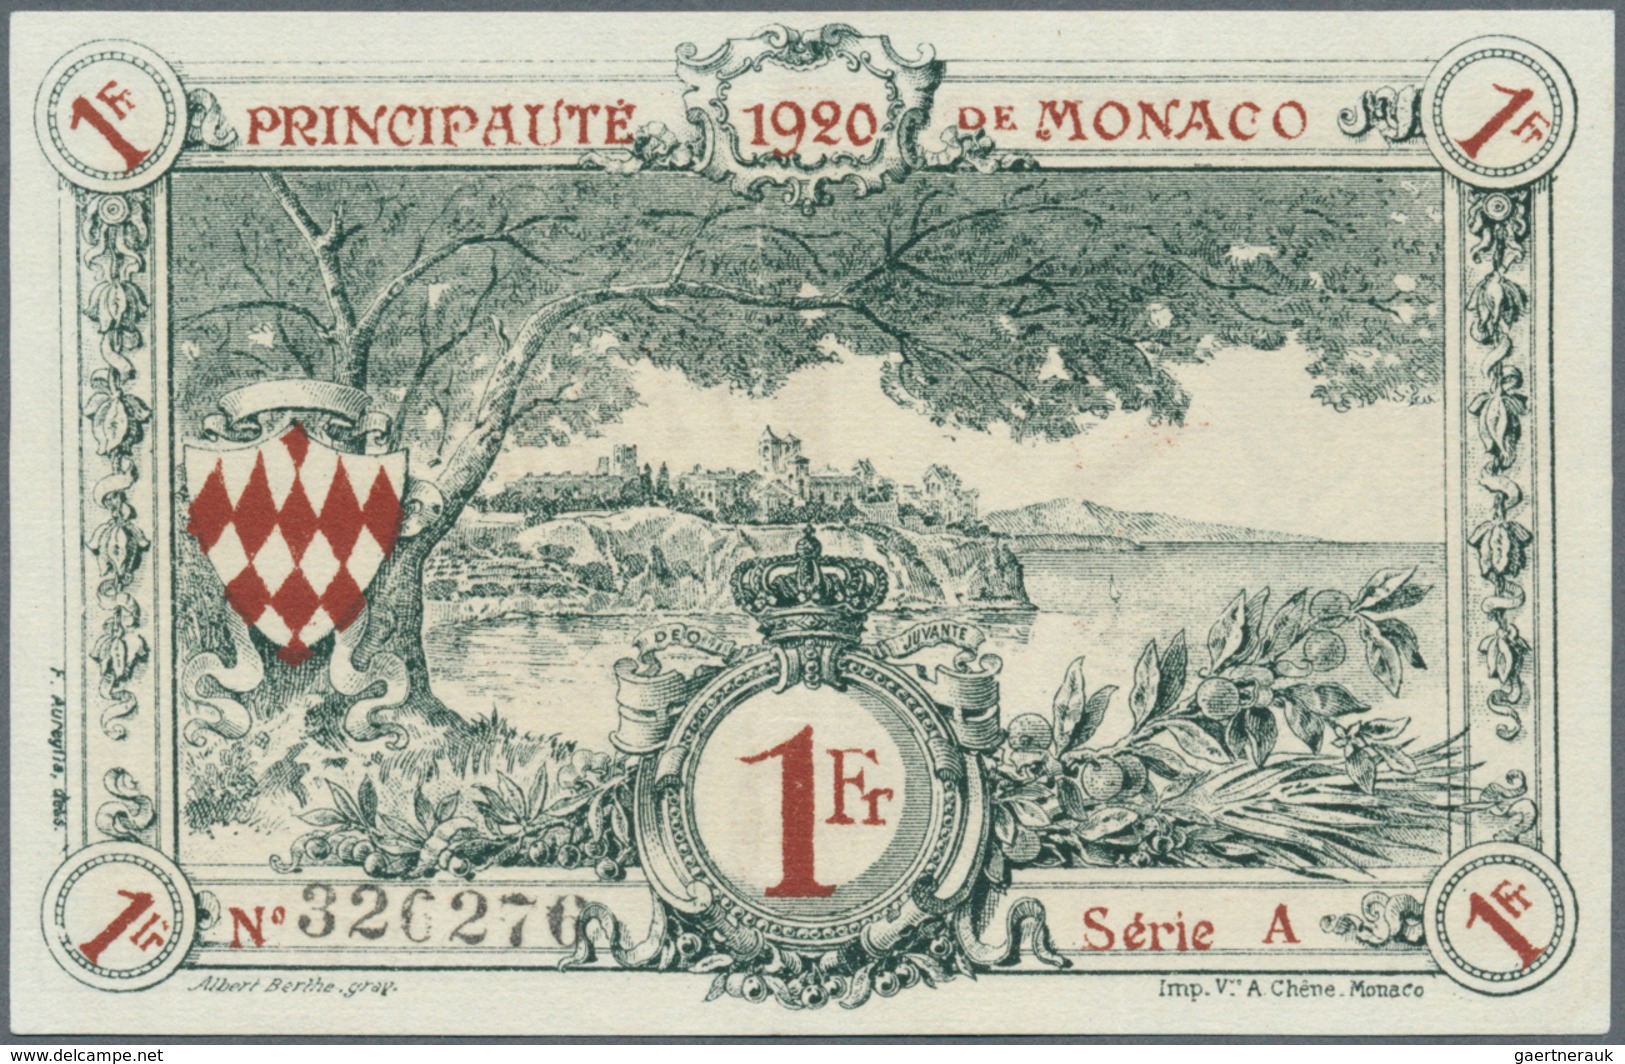 Monaco: 1 Franc 31.12.1922 P- 5. Principavte De Monaco, S/N #326276 Serie A, With Crisp Original Pap - Monaco